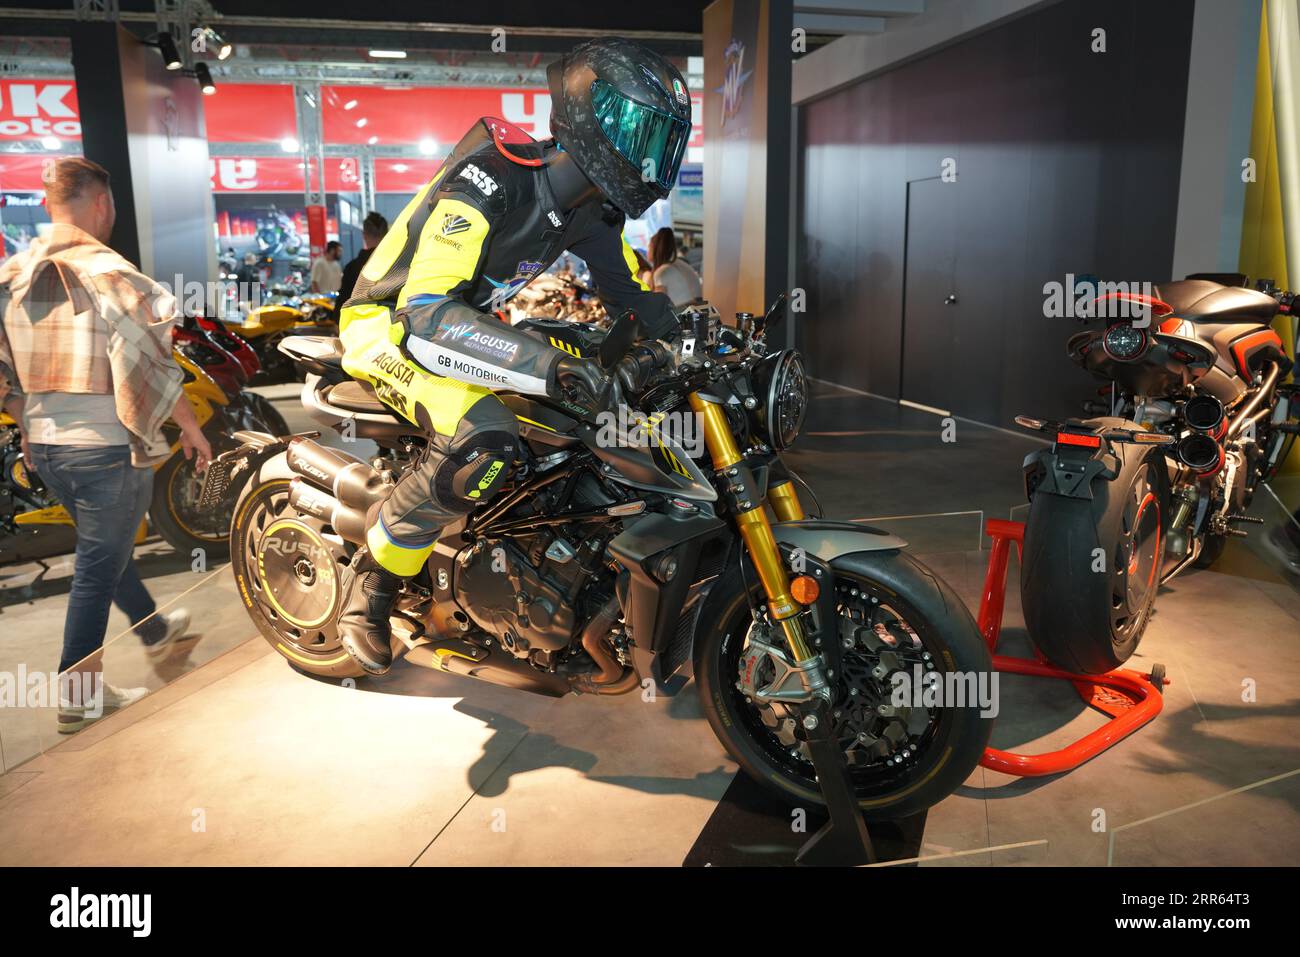 ISTANBUL, TURKIYE - 29 AVRIL 2023 : MV Agusta Rush moto exposée à Motobike Expo dans le centre d'exposition d'Istanbul Banque D'Images